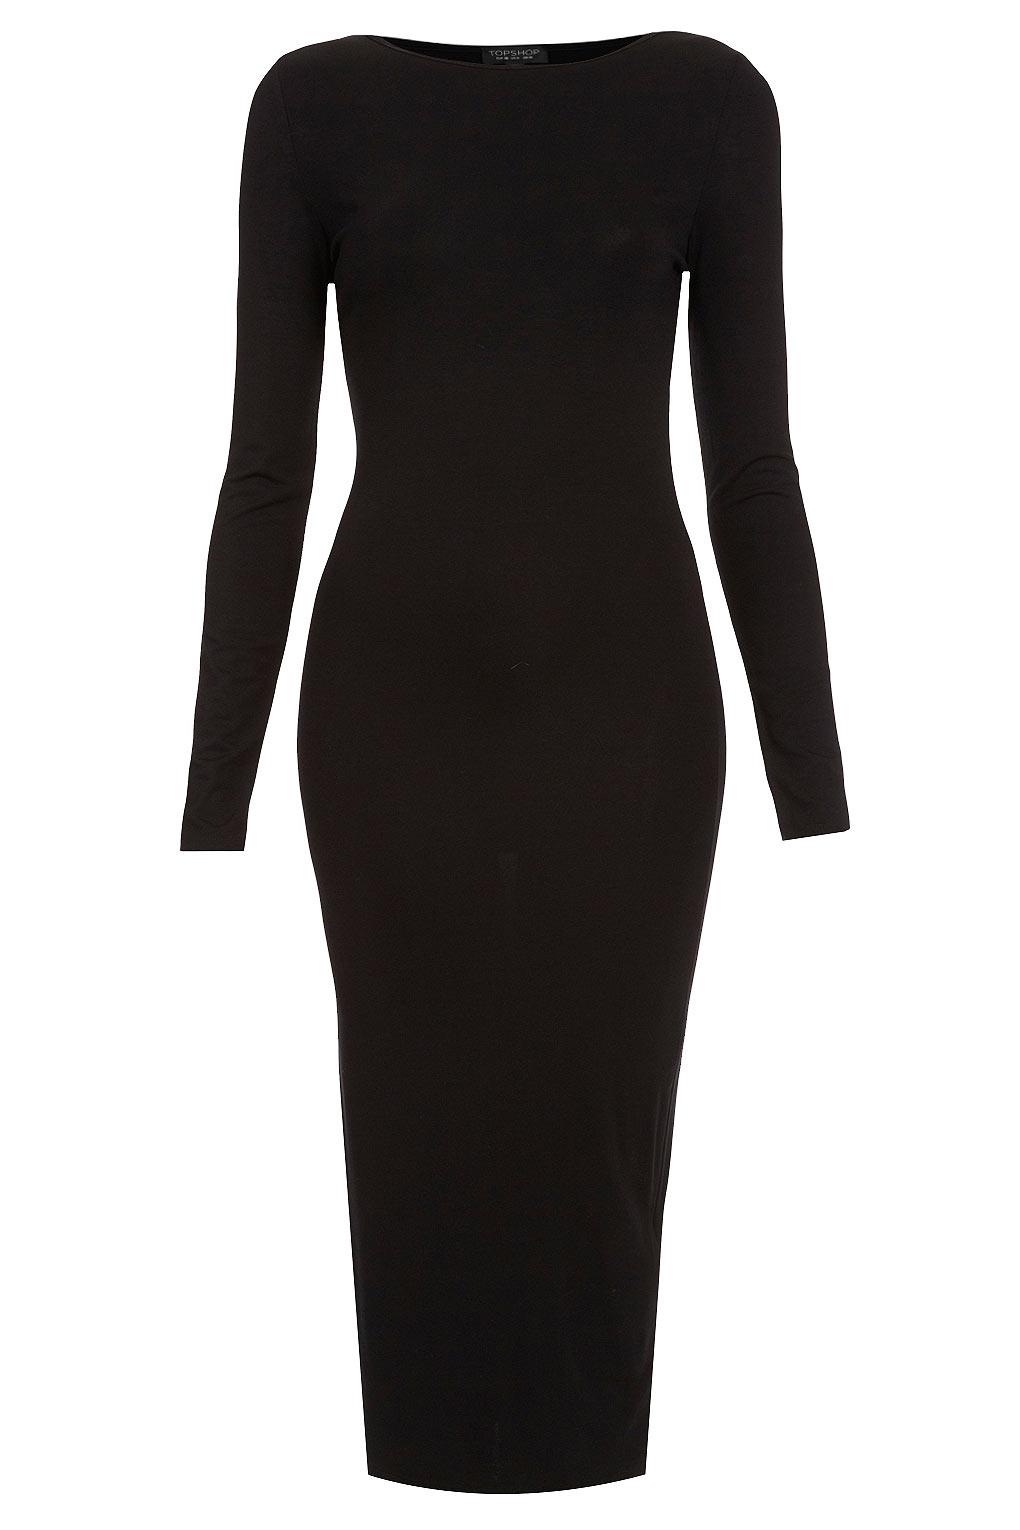 Topshop Black Midi Dress Hotsell, 51% OFF | www.markiesminigolf.com